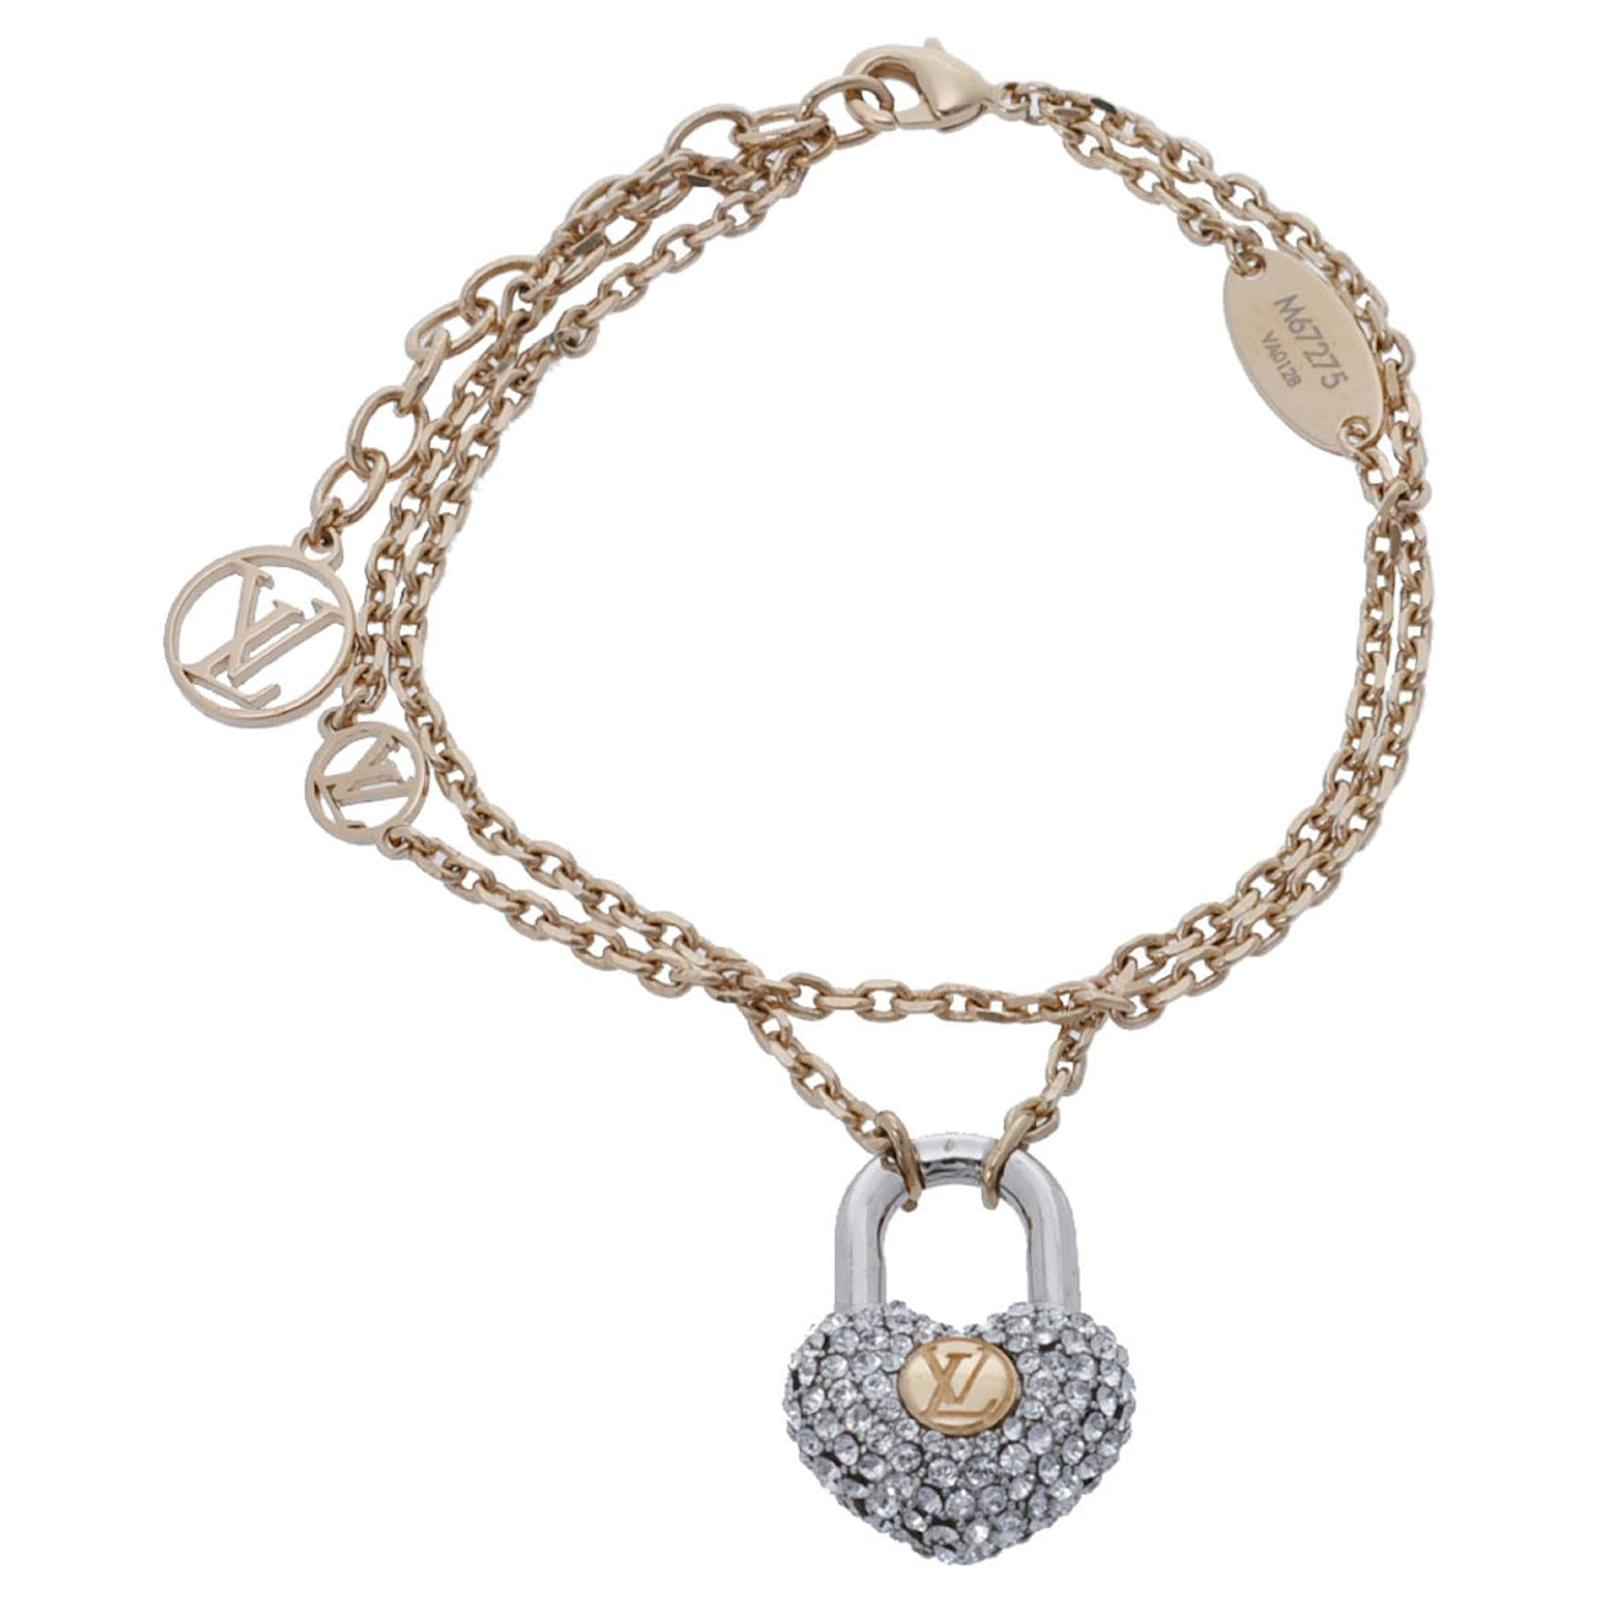 Louis Vuitton Crazy In Lock charm bracelet size 19cm